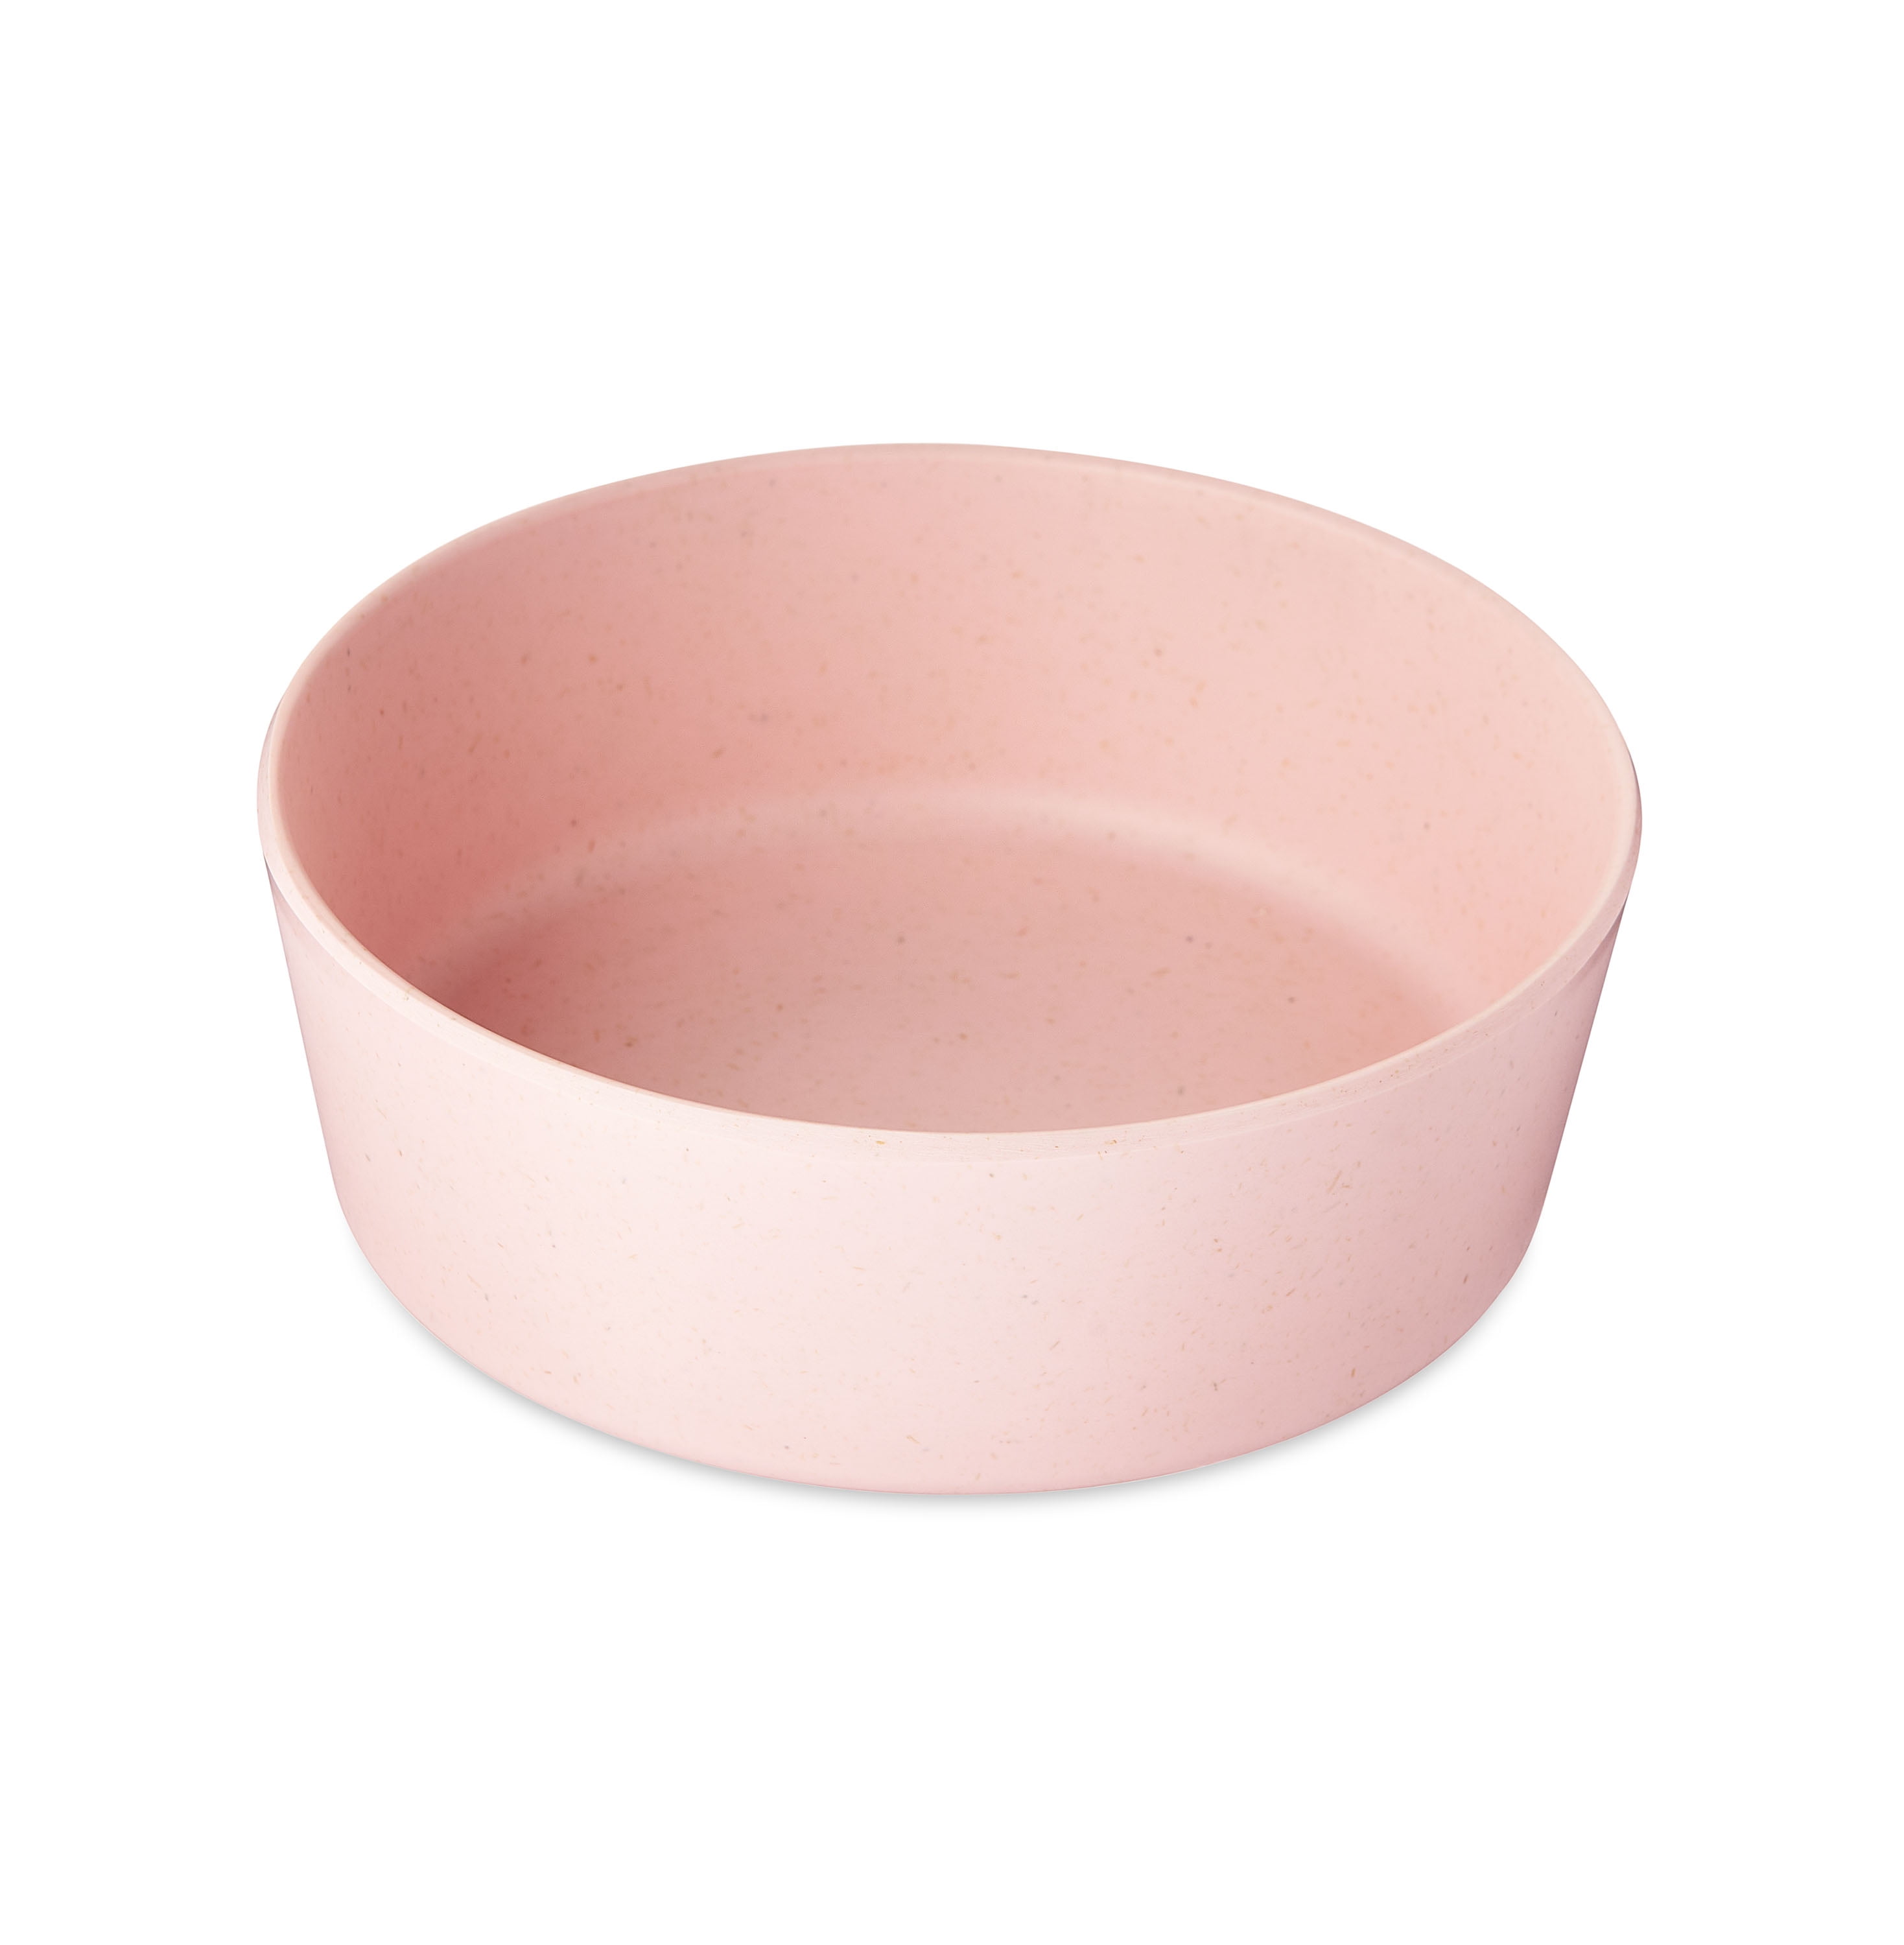 Harmony Pink Plastic Slow Feeder Dog Bowl, Large